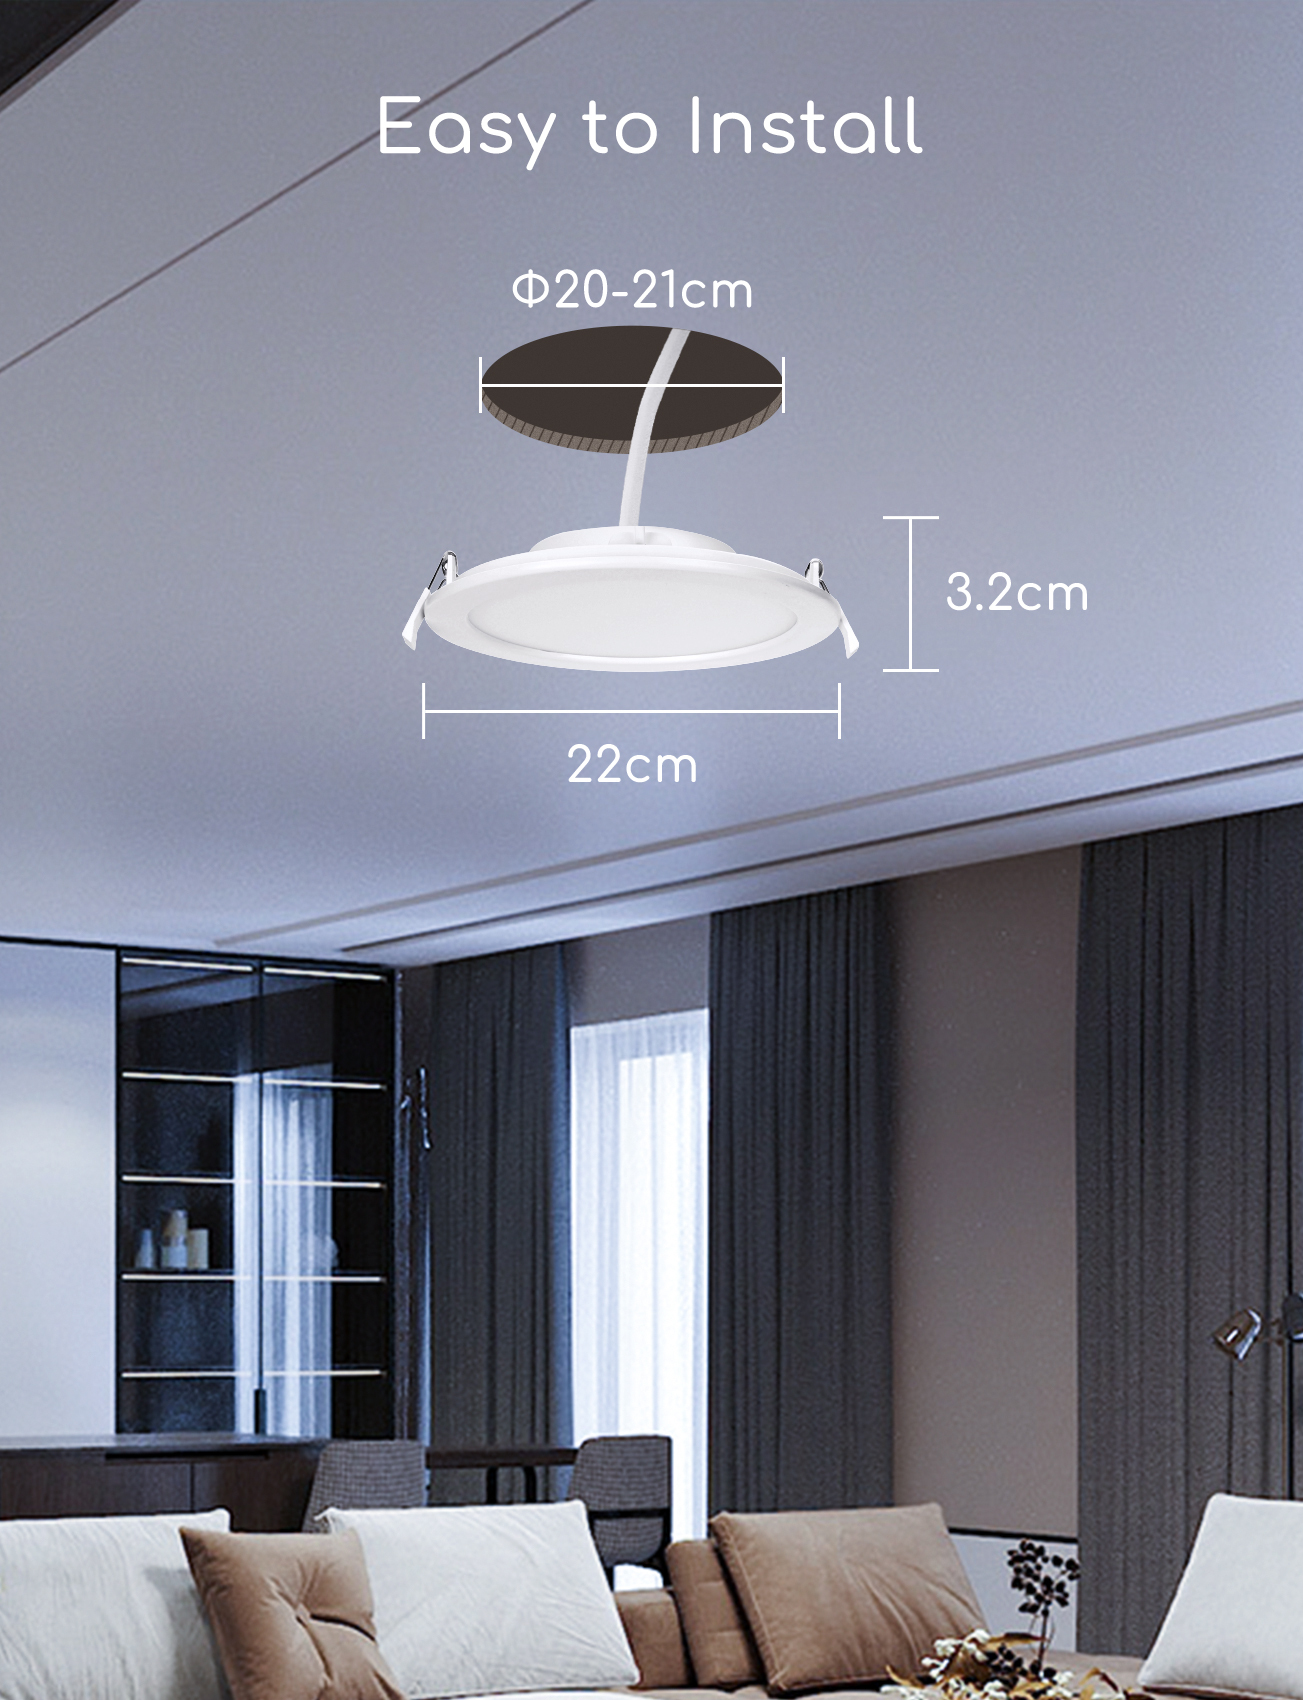 Aigostar Downlight LED Empotrable Inteligente Ultrafina 18W, CCT. Regulable de luz cálida a blanca 3000-6500K, 1380lm. Compatible Alexa y Google Home. Foco Empotrable led: 22 x 3,2 cm alto. (5 Pcs)